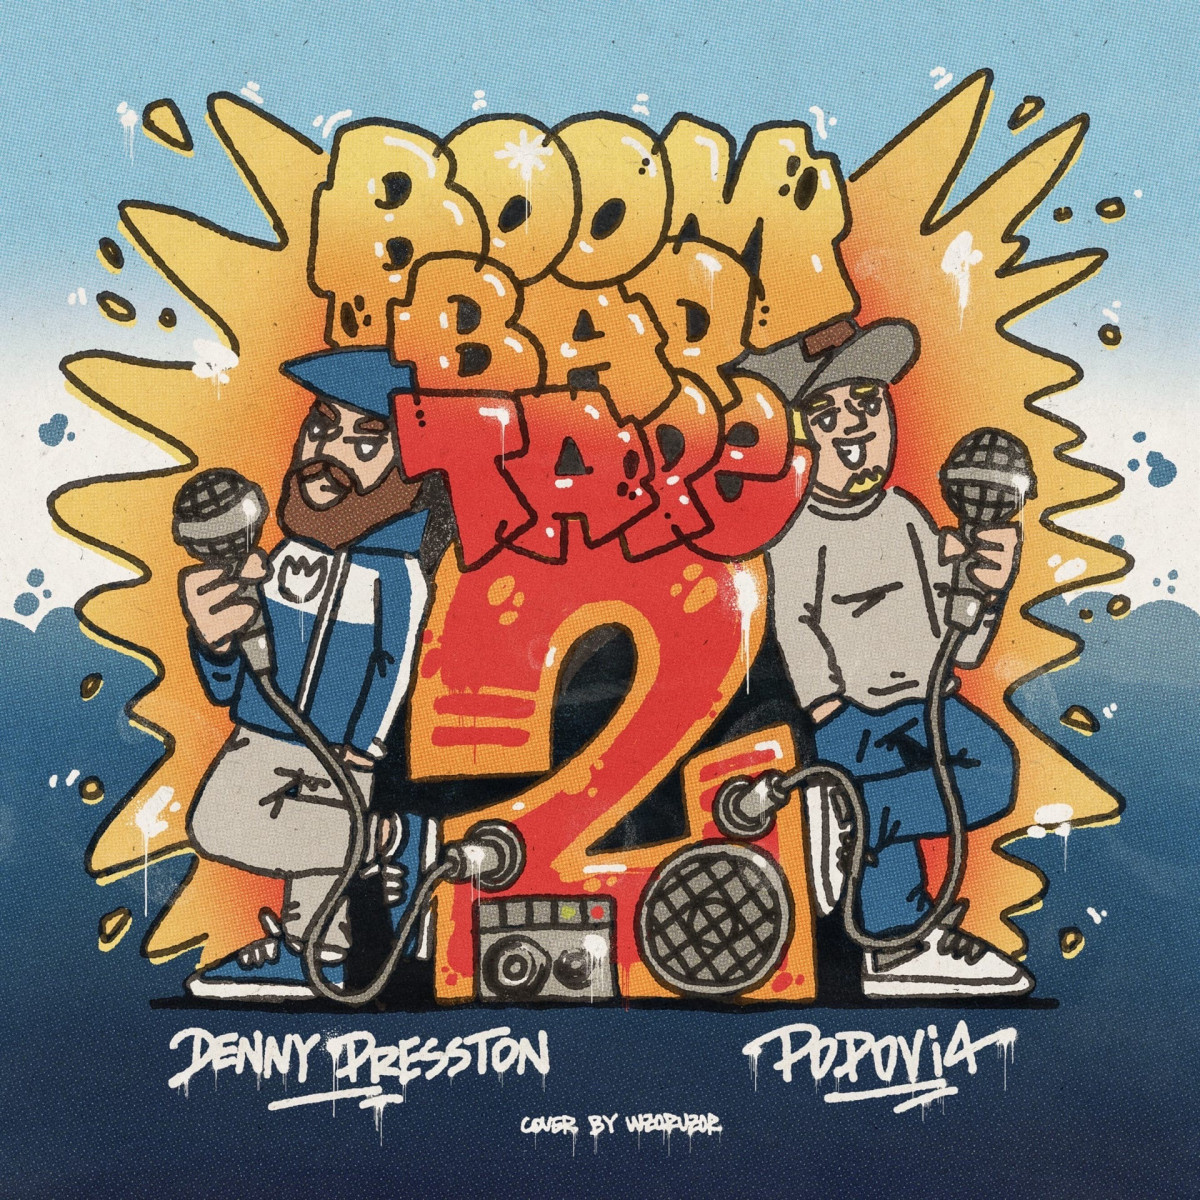 Popovi4 & Denny Presston — «Boom Bap Tape 2»